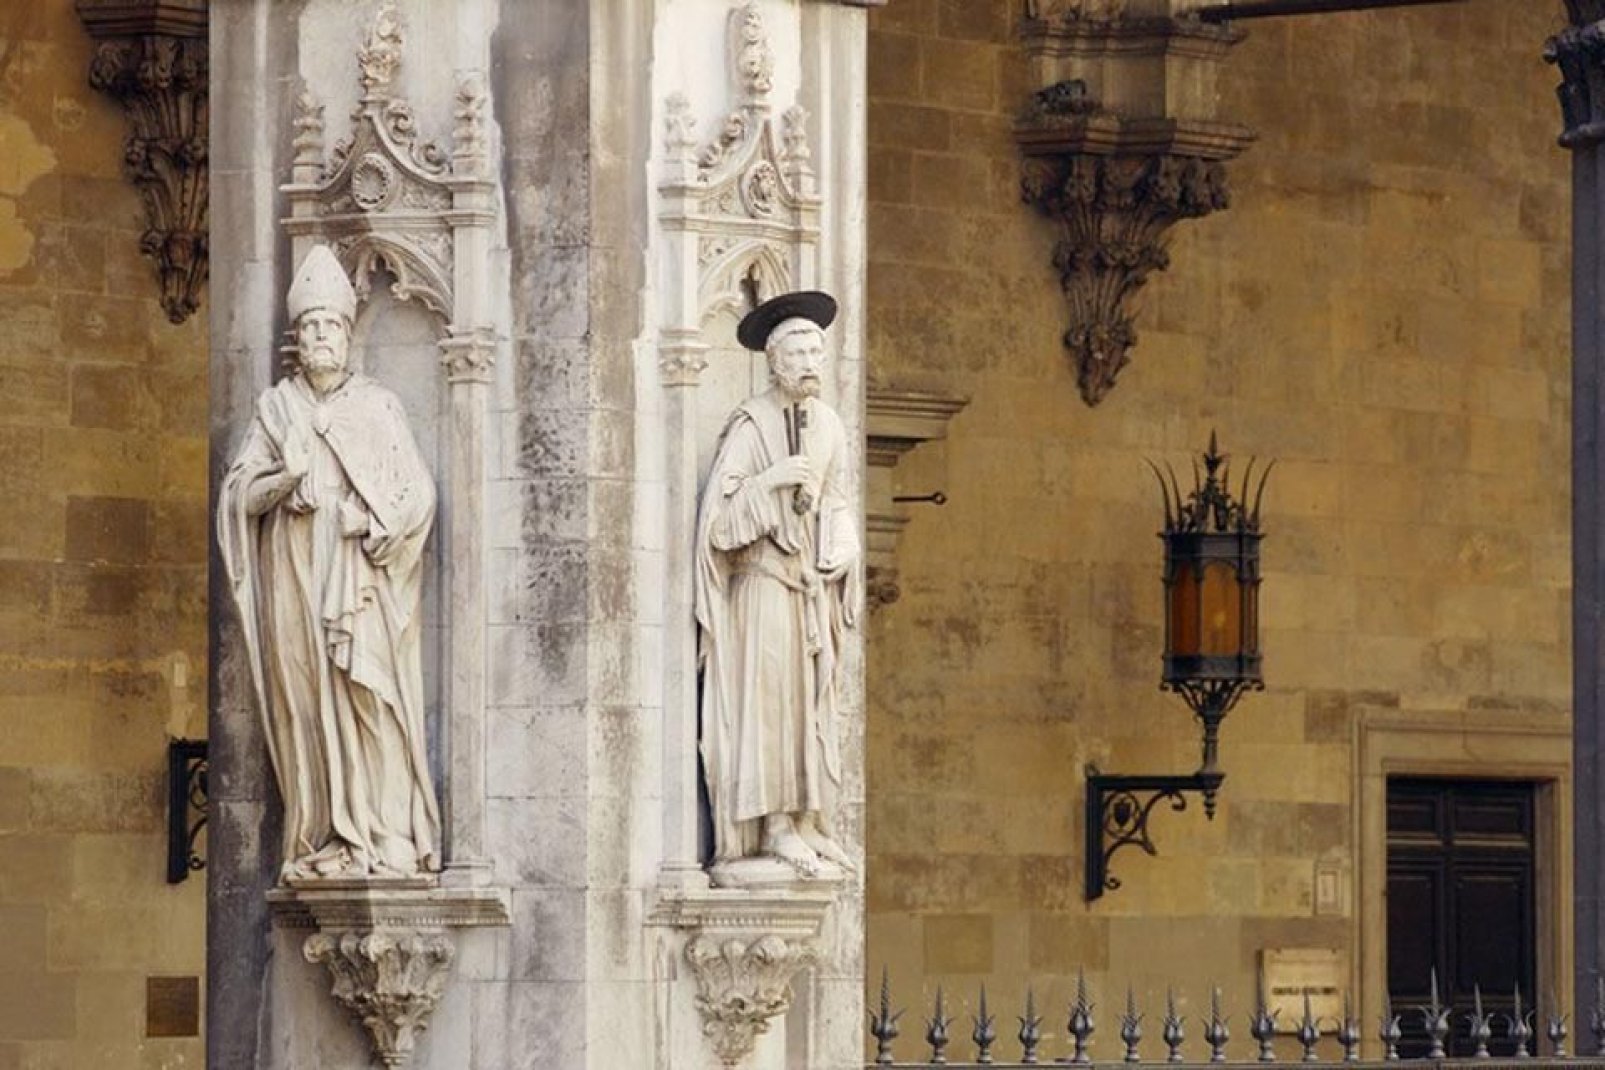 Moltissimi sono i monumenti religiosi da vedersi a Siena: oltre alla Cattedrale, si ricordi almeno il battistero, la Basilica dell'Osservanza e la Santissoma Annunziata